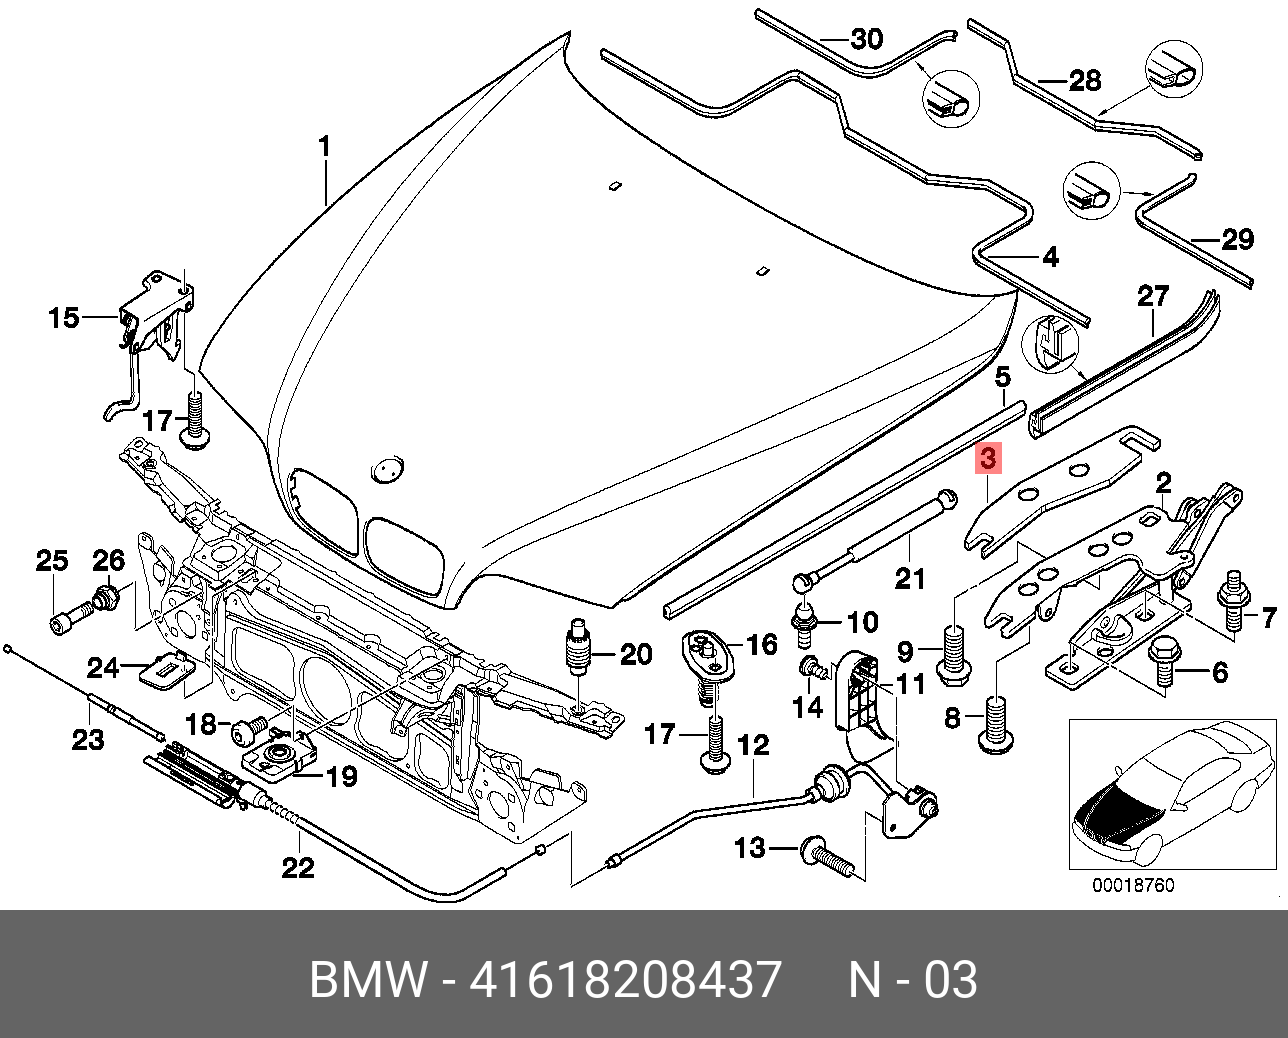 Передняя часть капота. Болт крепления капота БМВ е34. Крепеж троса капота BMW e39. Трос капота е39 схема. BMW e39 капот.